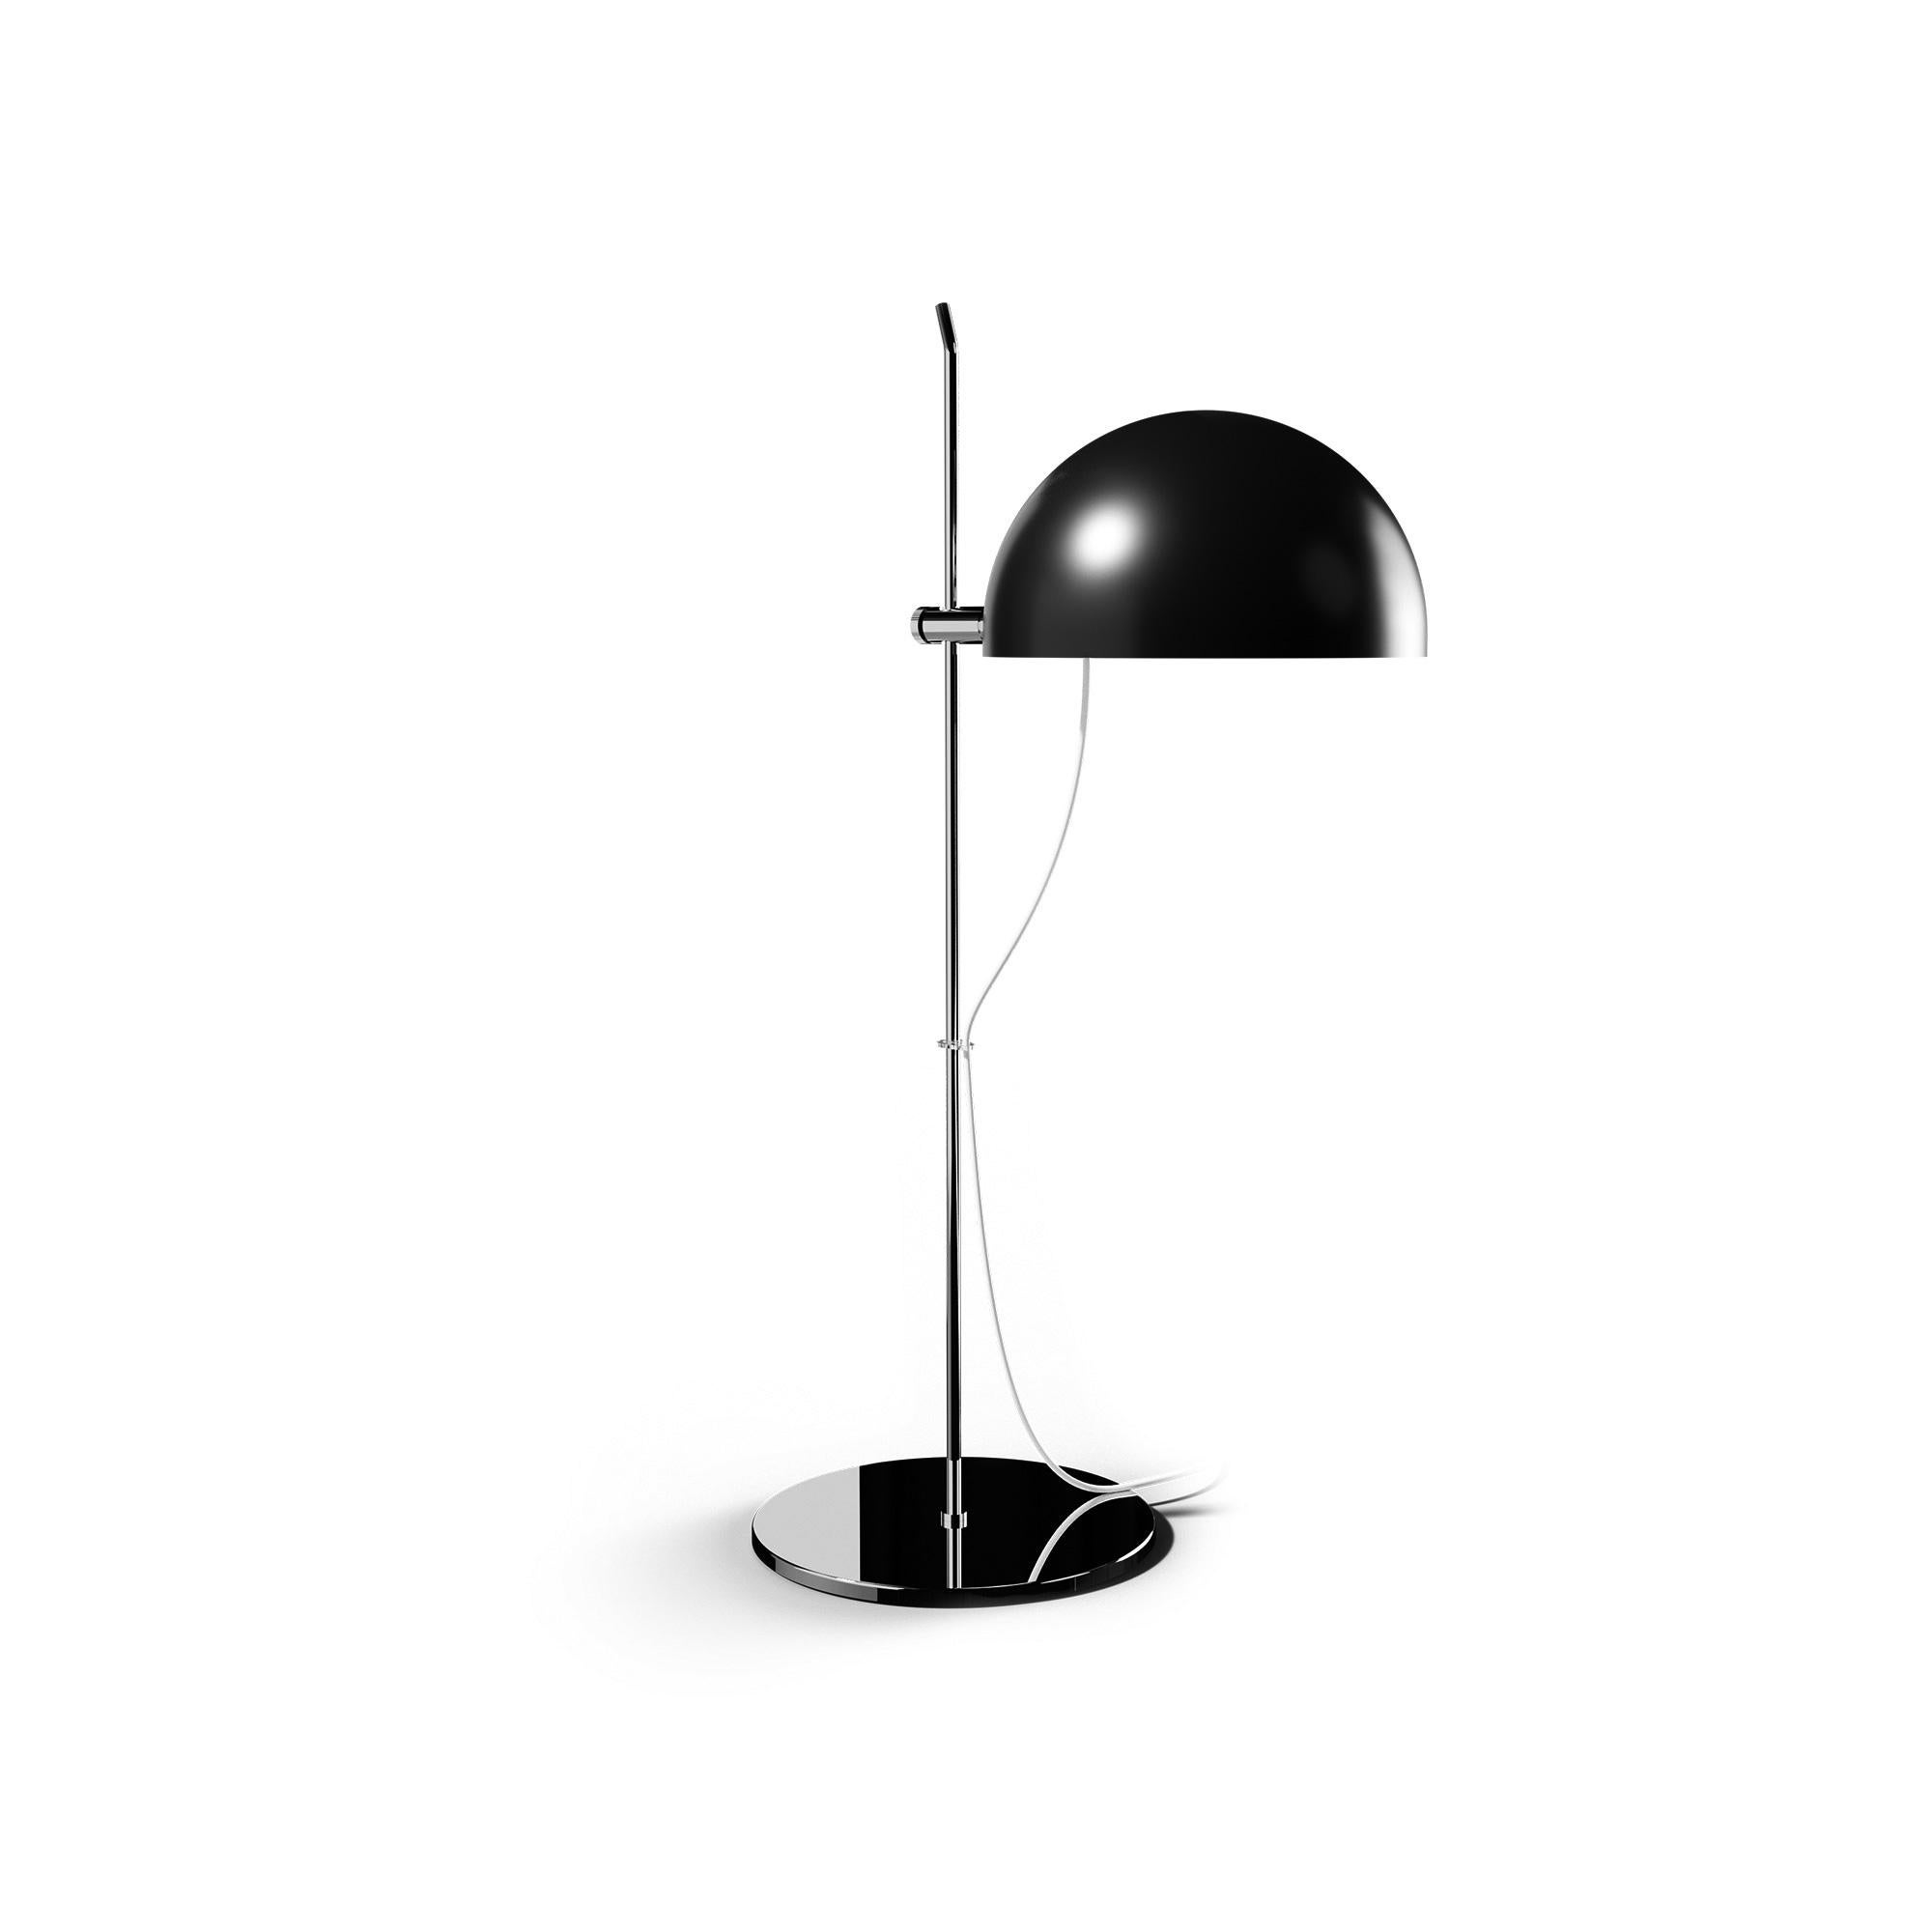 Alain Richard 'A22f' Task Lamp in Chrome for Disderot For Sale 8